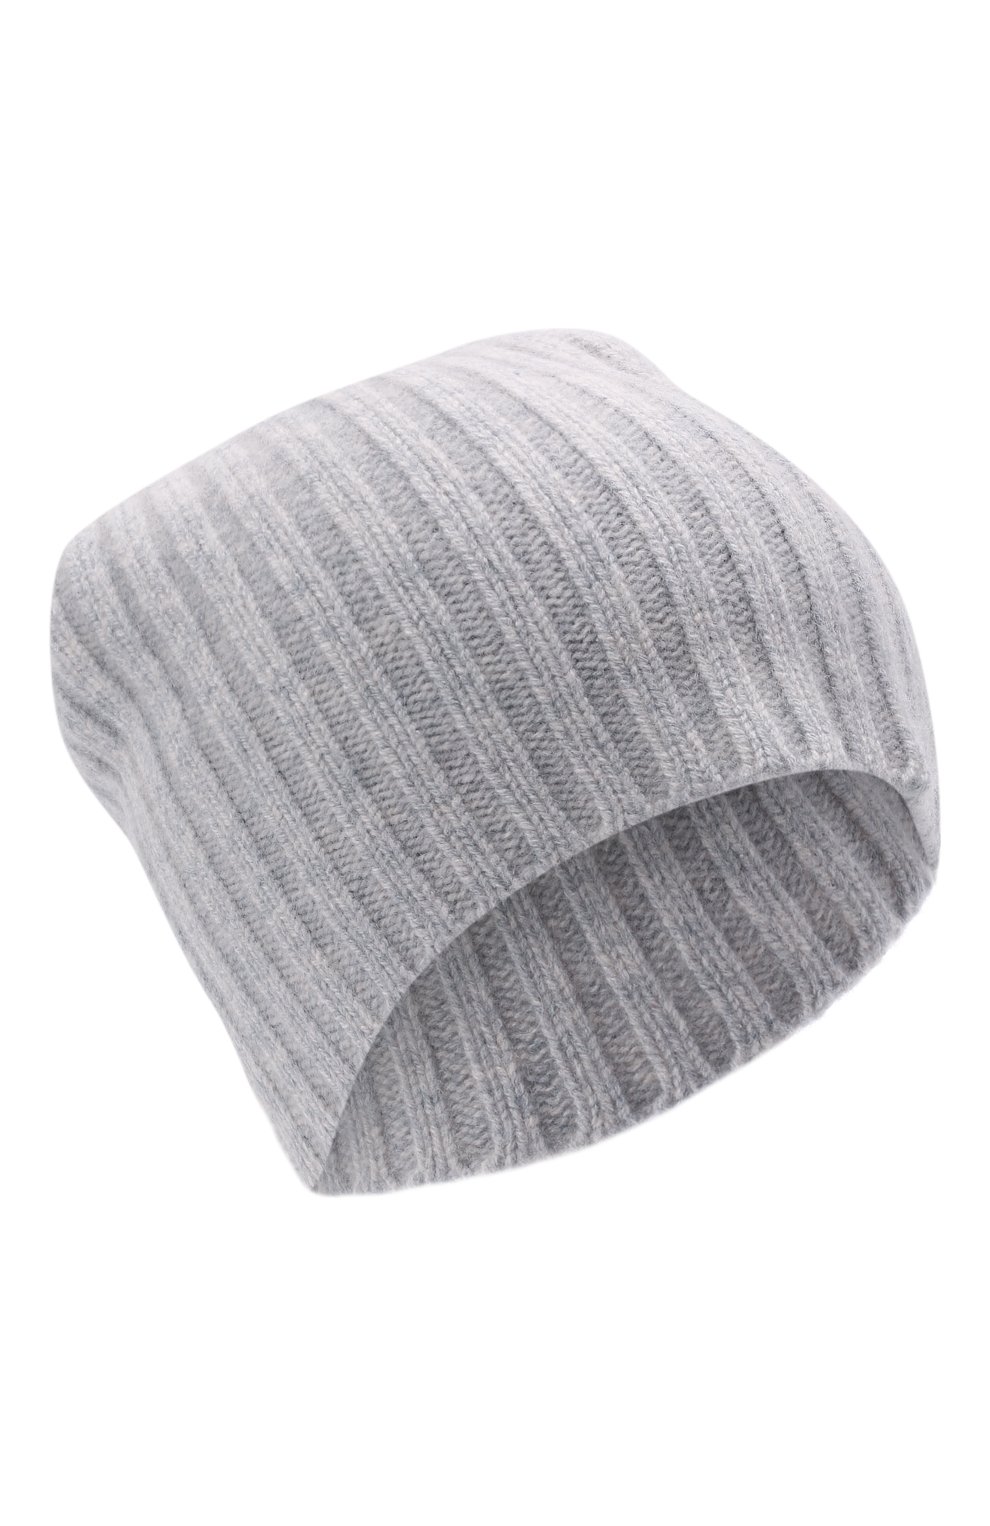 Женская кашемировая шапка ALLUDE серого цвета, арт. 215/60630 | Фото 1 (Материал: Текстиль, Кашемир, Шерсть)